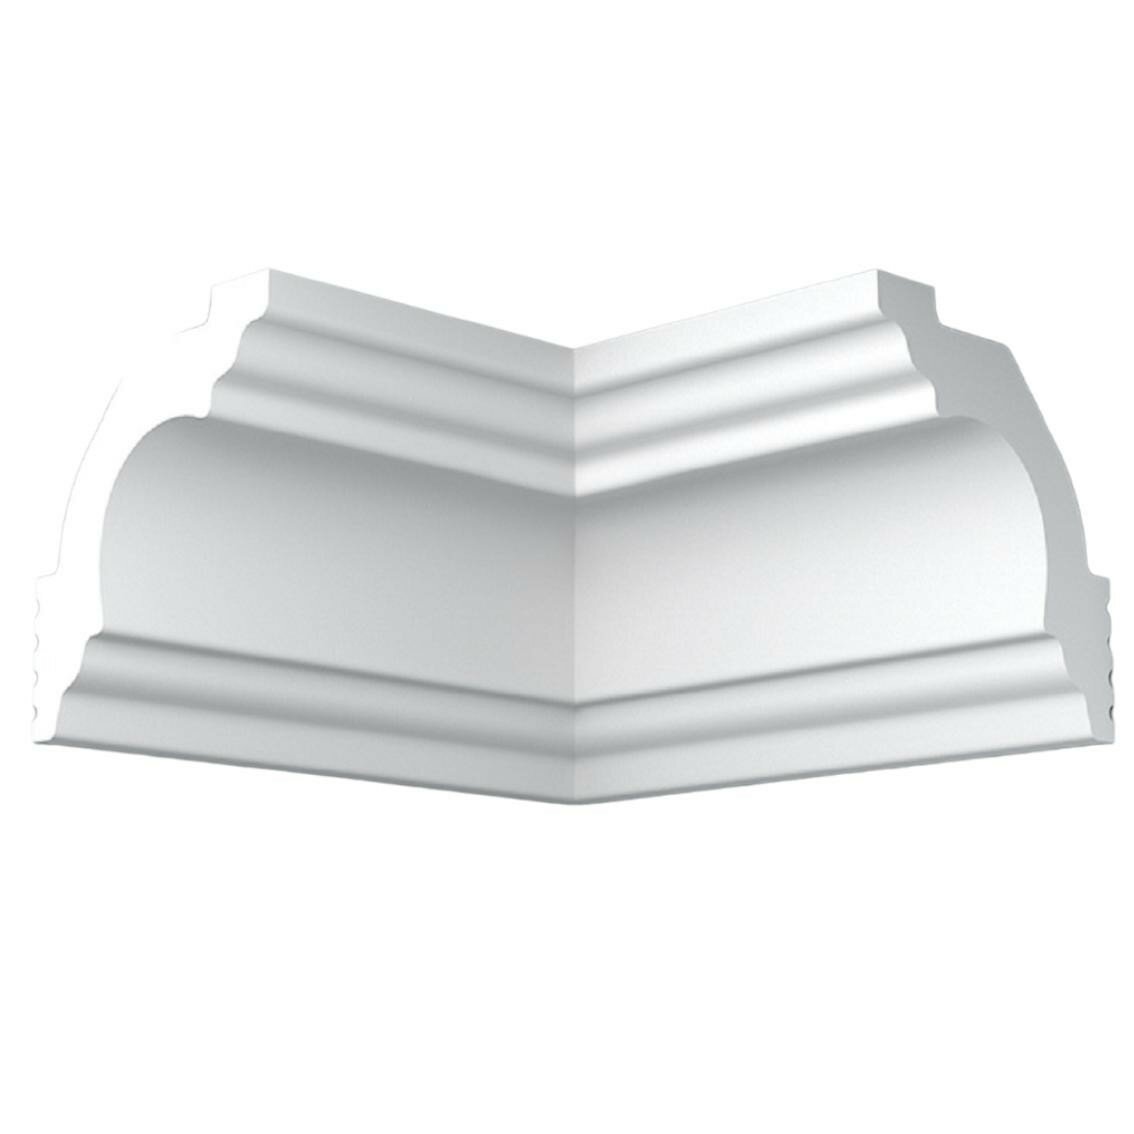 Уголок потолочный экструдированный, плинтэкс внутренний I35/35SC, белый, 35х35мм, 4шт